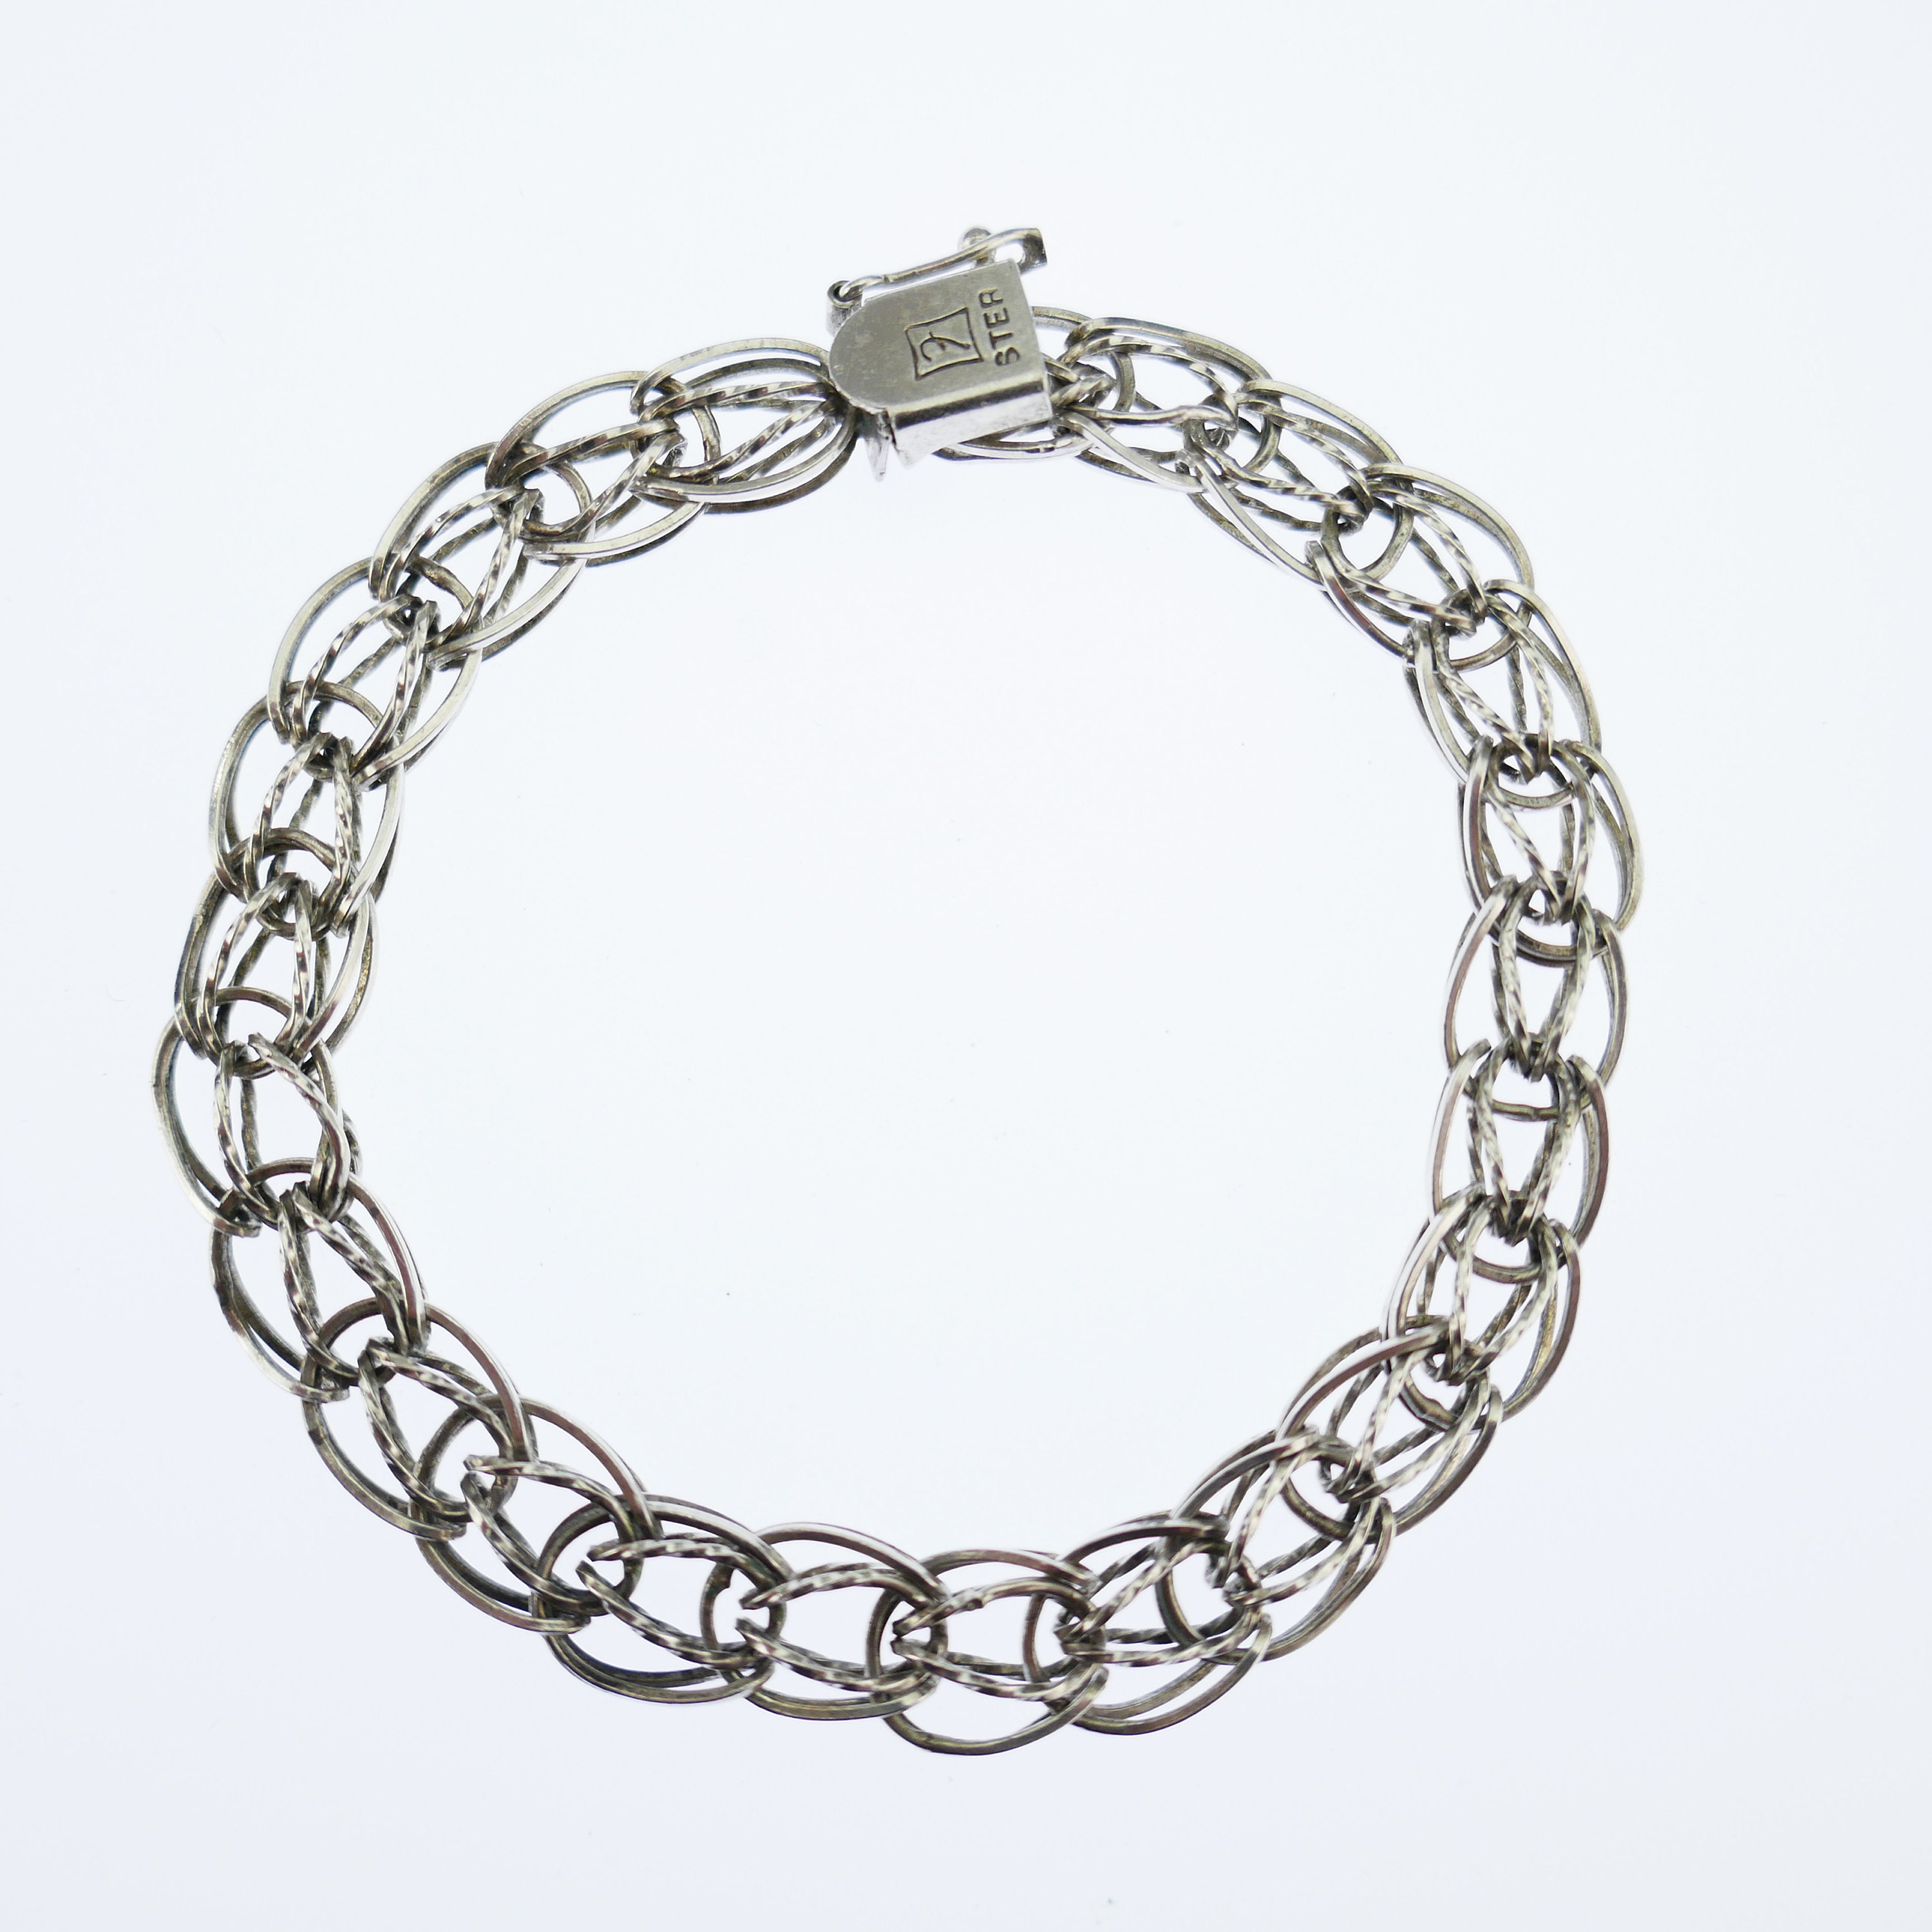 Vintage Charm Starter bracelet 925 silver Sterling double link weave